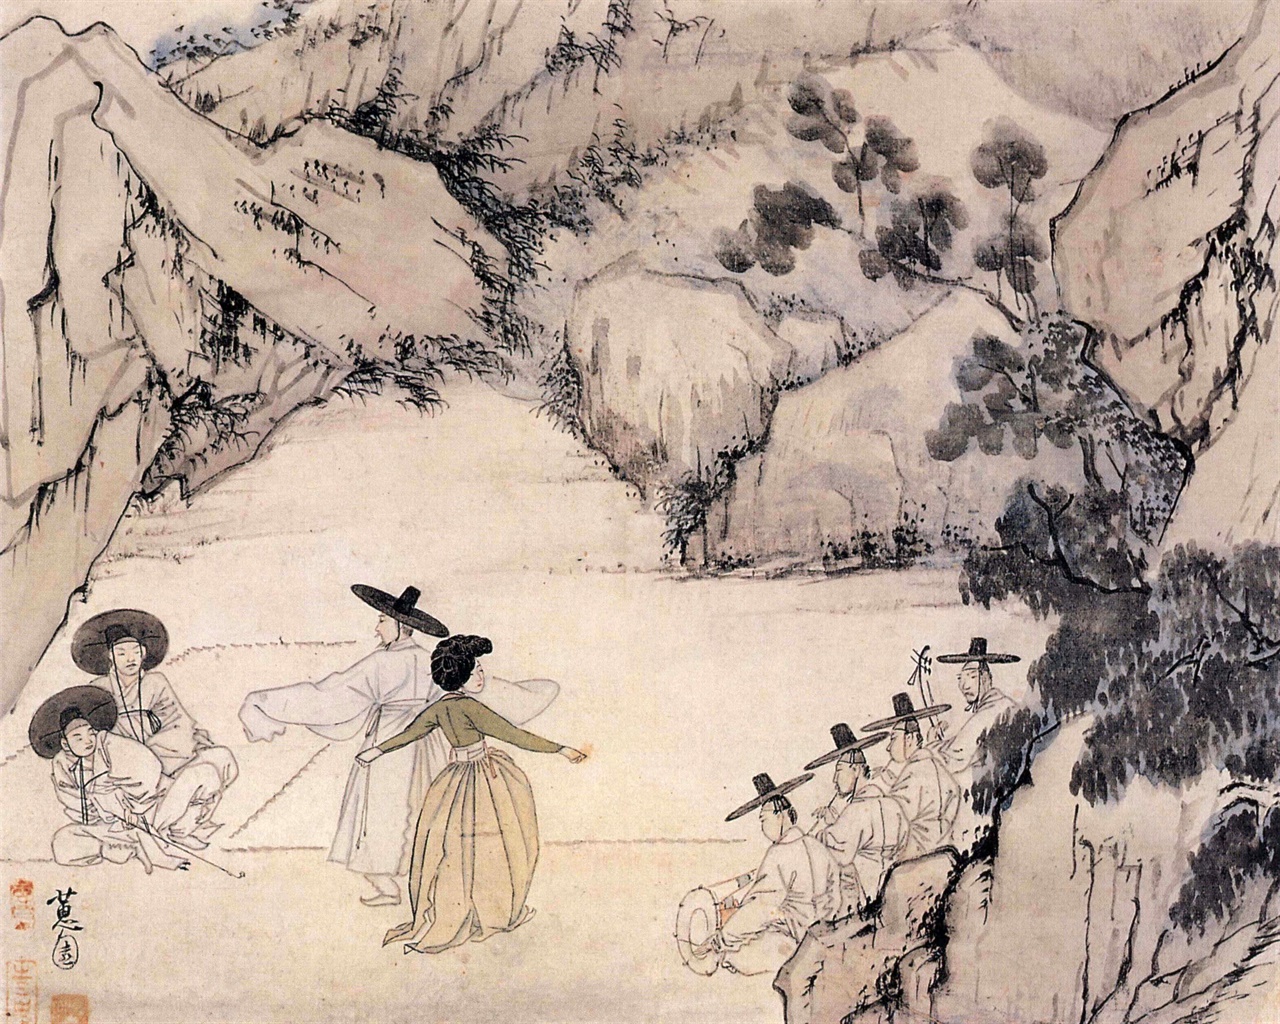 신윤복, 18세기, 종이에 채색, 28.2 x 35.6 cm, 간송미술관 소장, 국보 135호